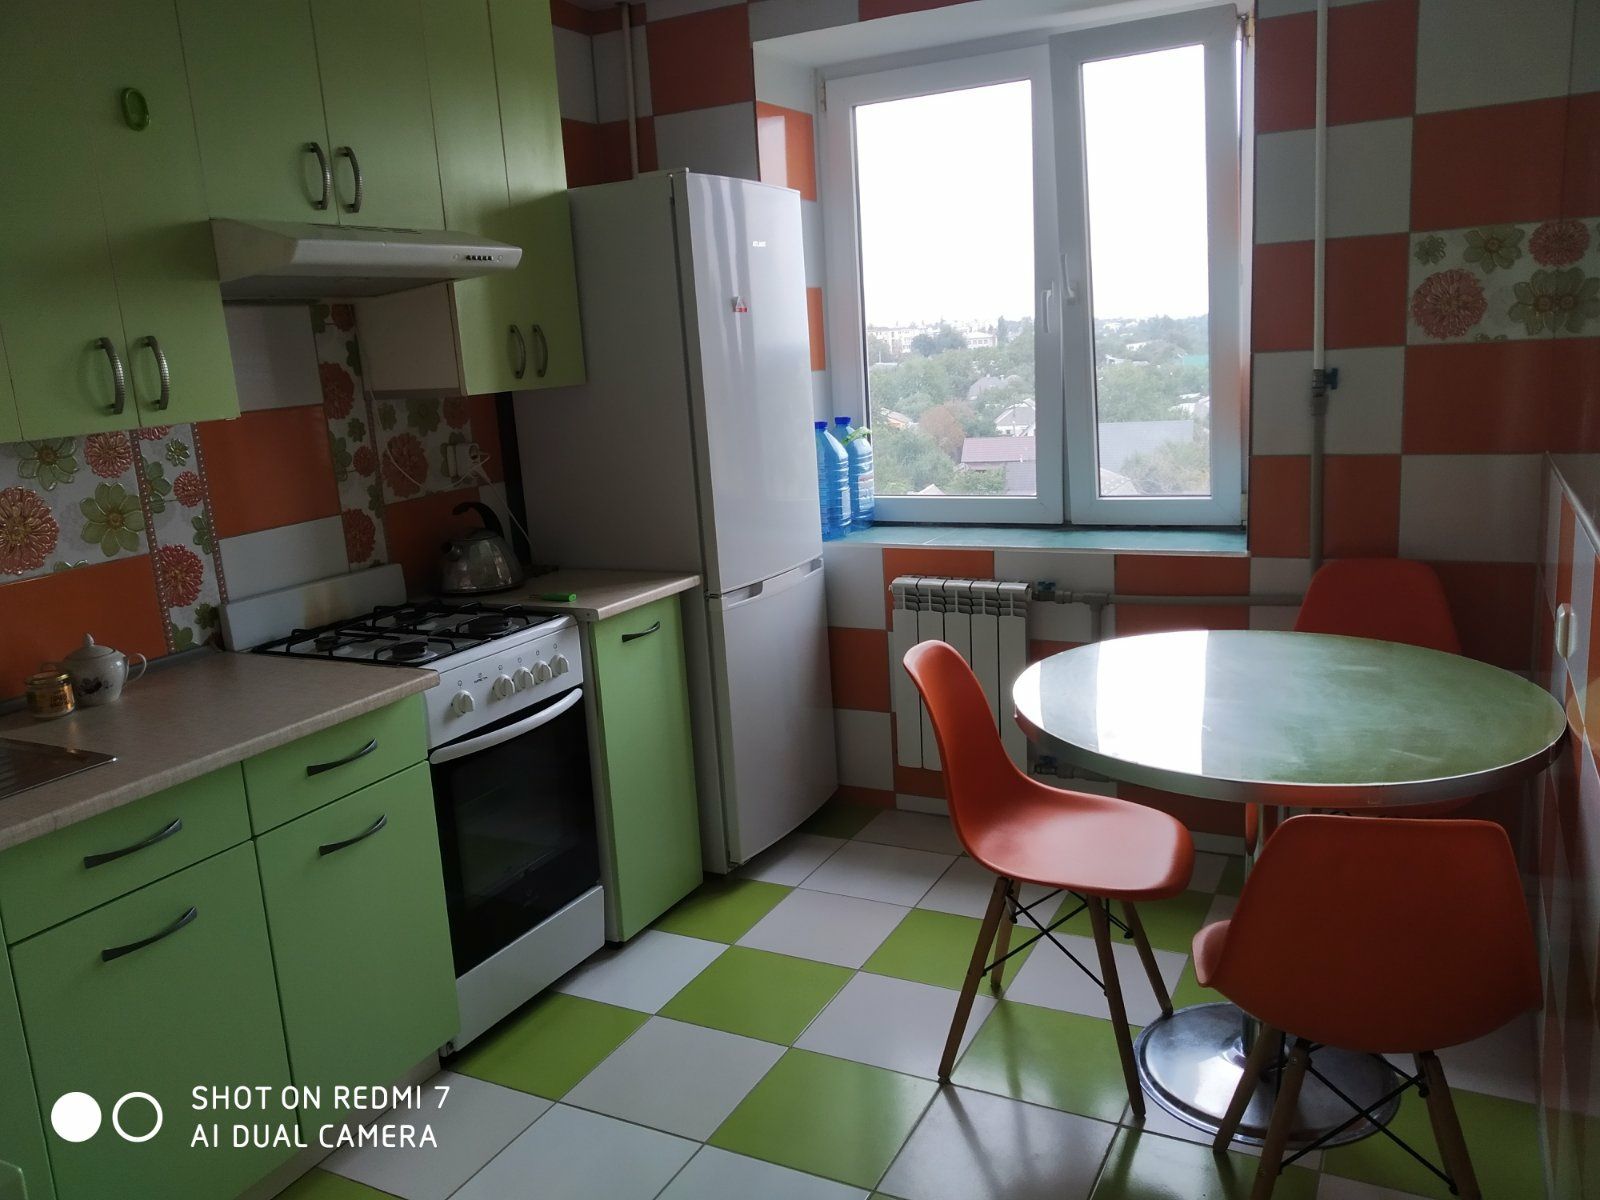 Сдам 1 комнатную квартиру в районе Одесской, Класс